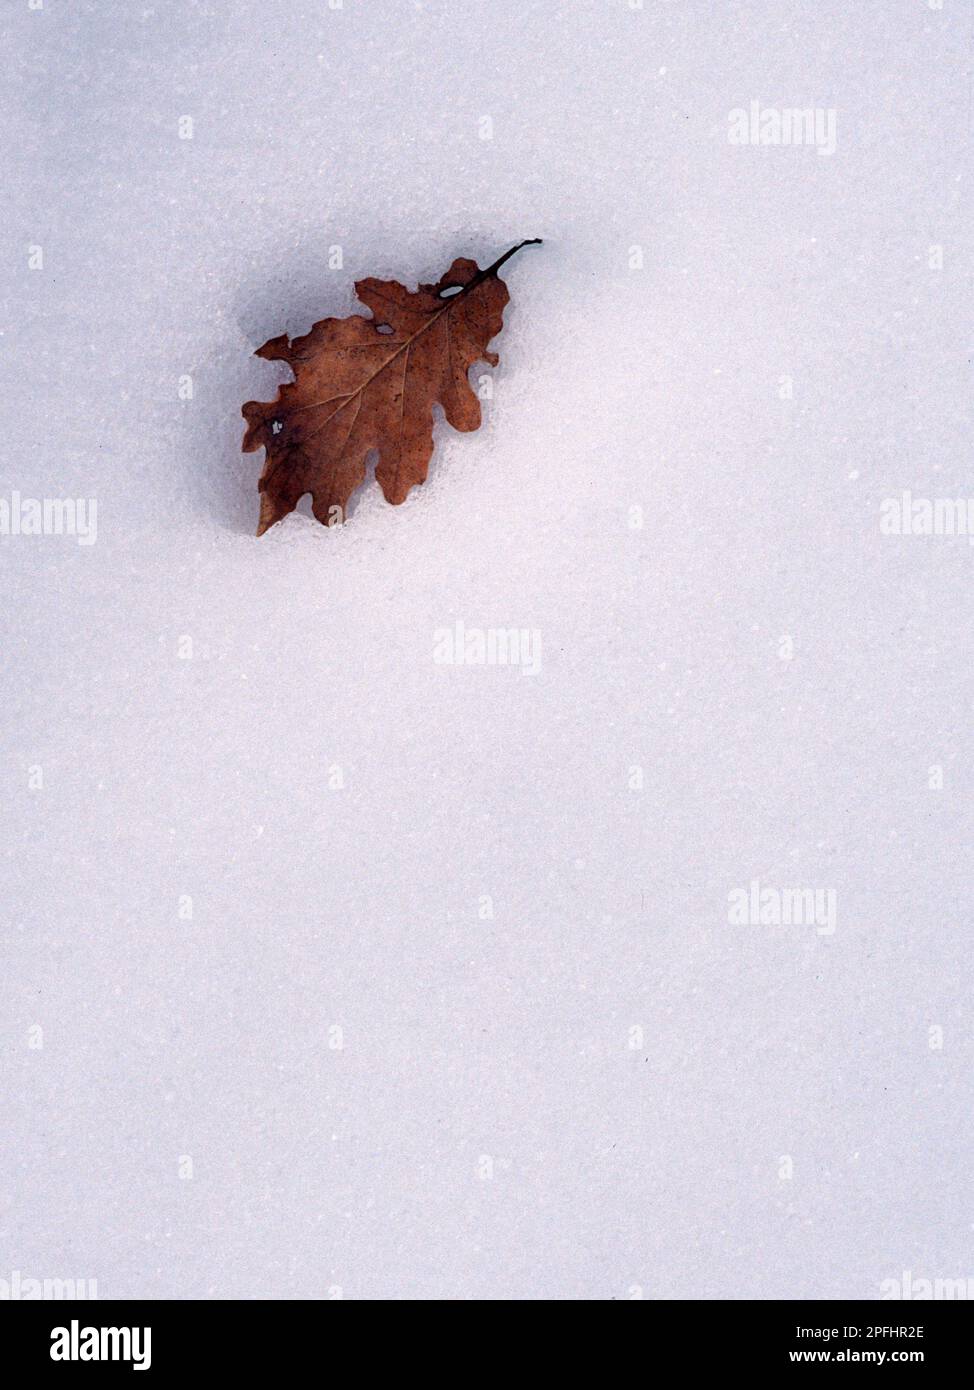 foglia di quercia e e neve.    oak leaf and snow field    Foresta di Ortakis. Bolotana. Nuoro, Sardegna, Italia Stock Photo